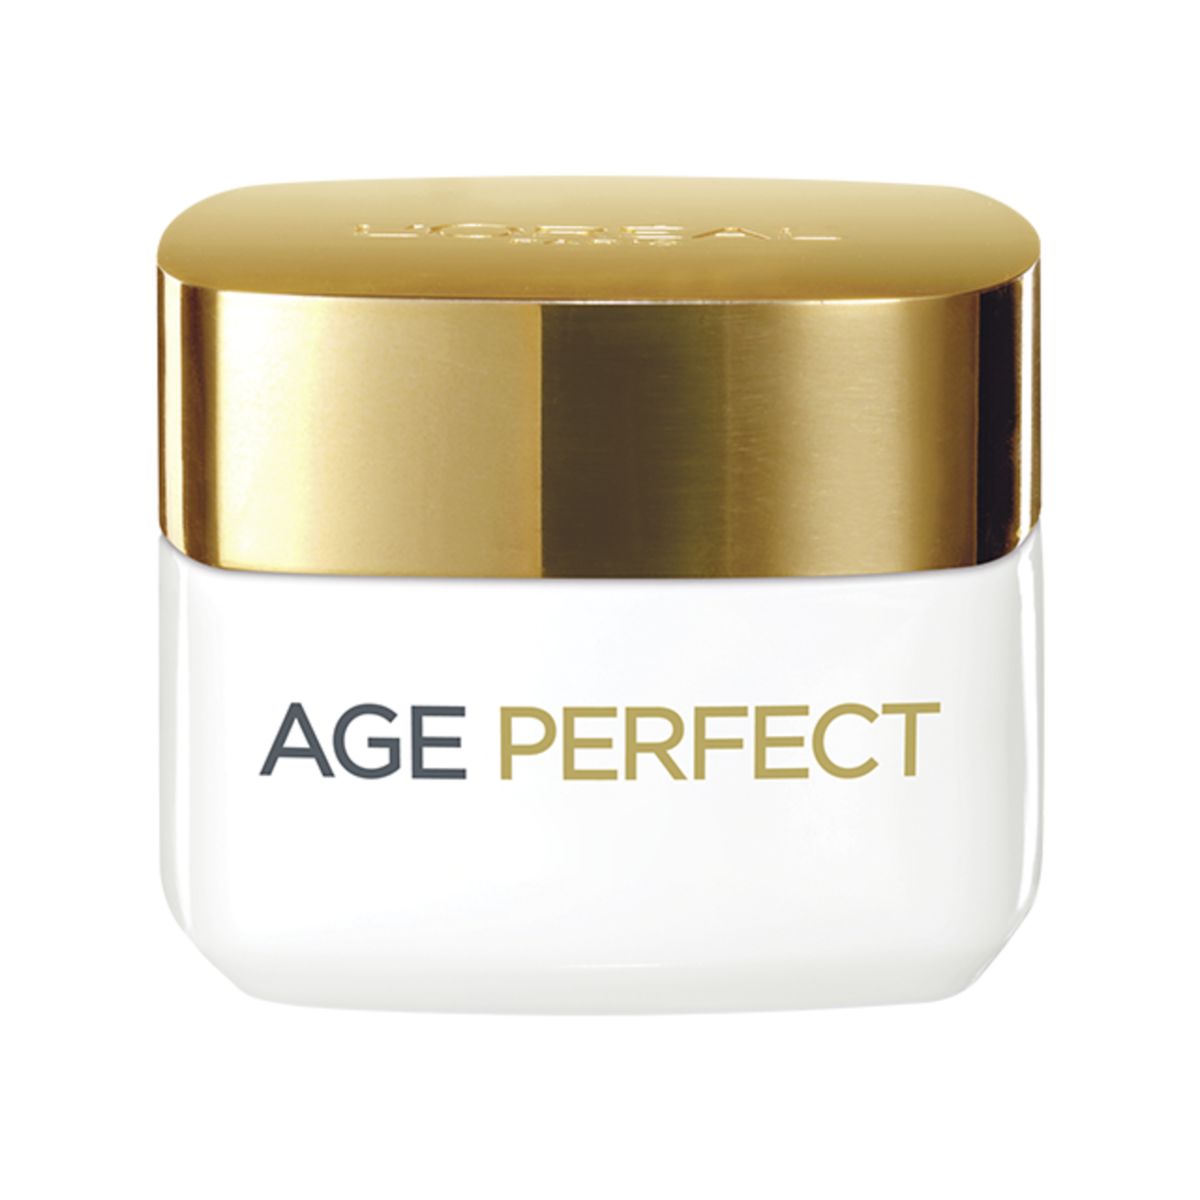 L'Oréal Paris Age Perfect Soin ré-hydratant jour peaux matures 50 ml